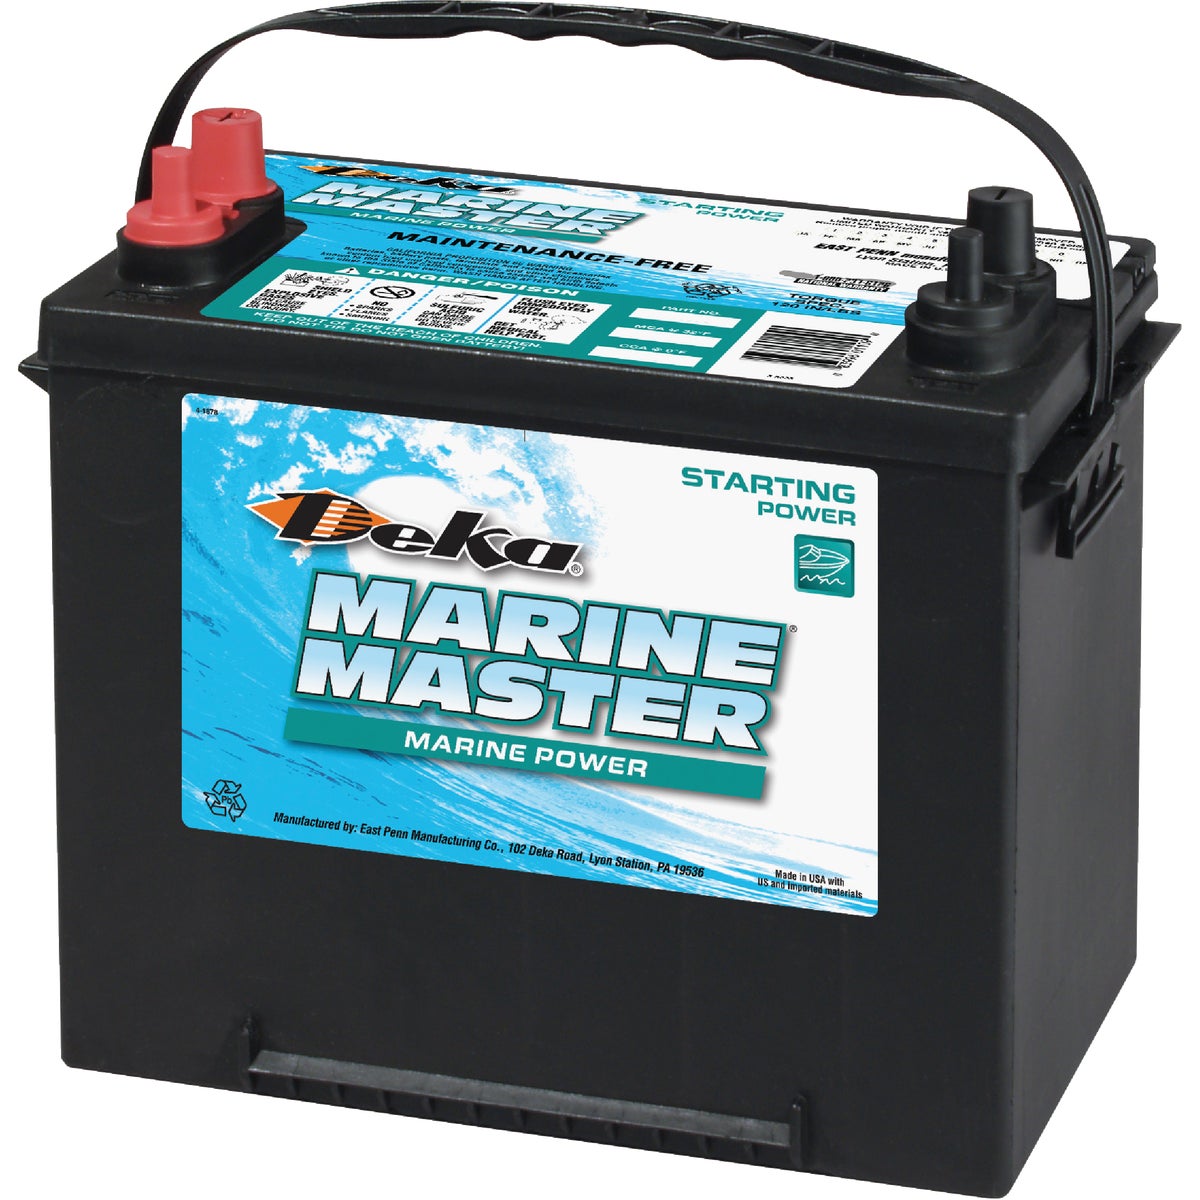 Item 570569, Marine Master quick cranking, high-powered starting battery.